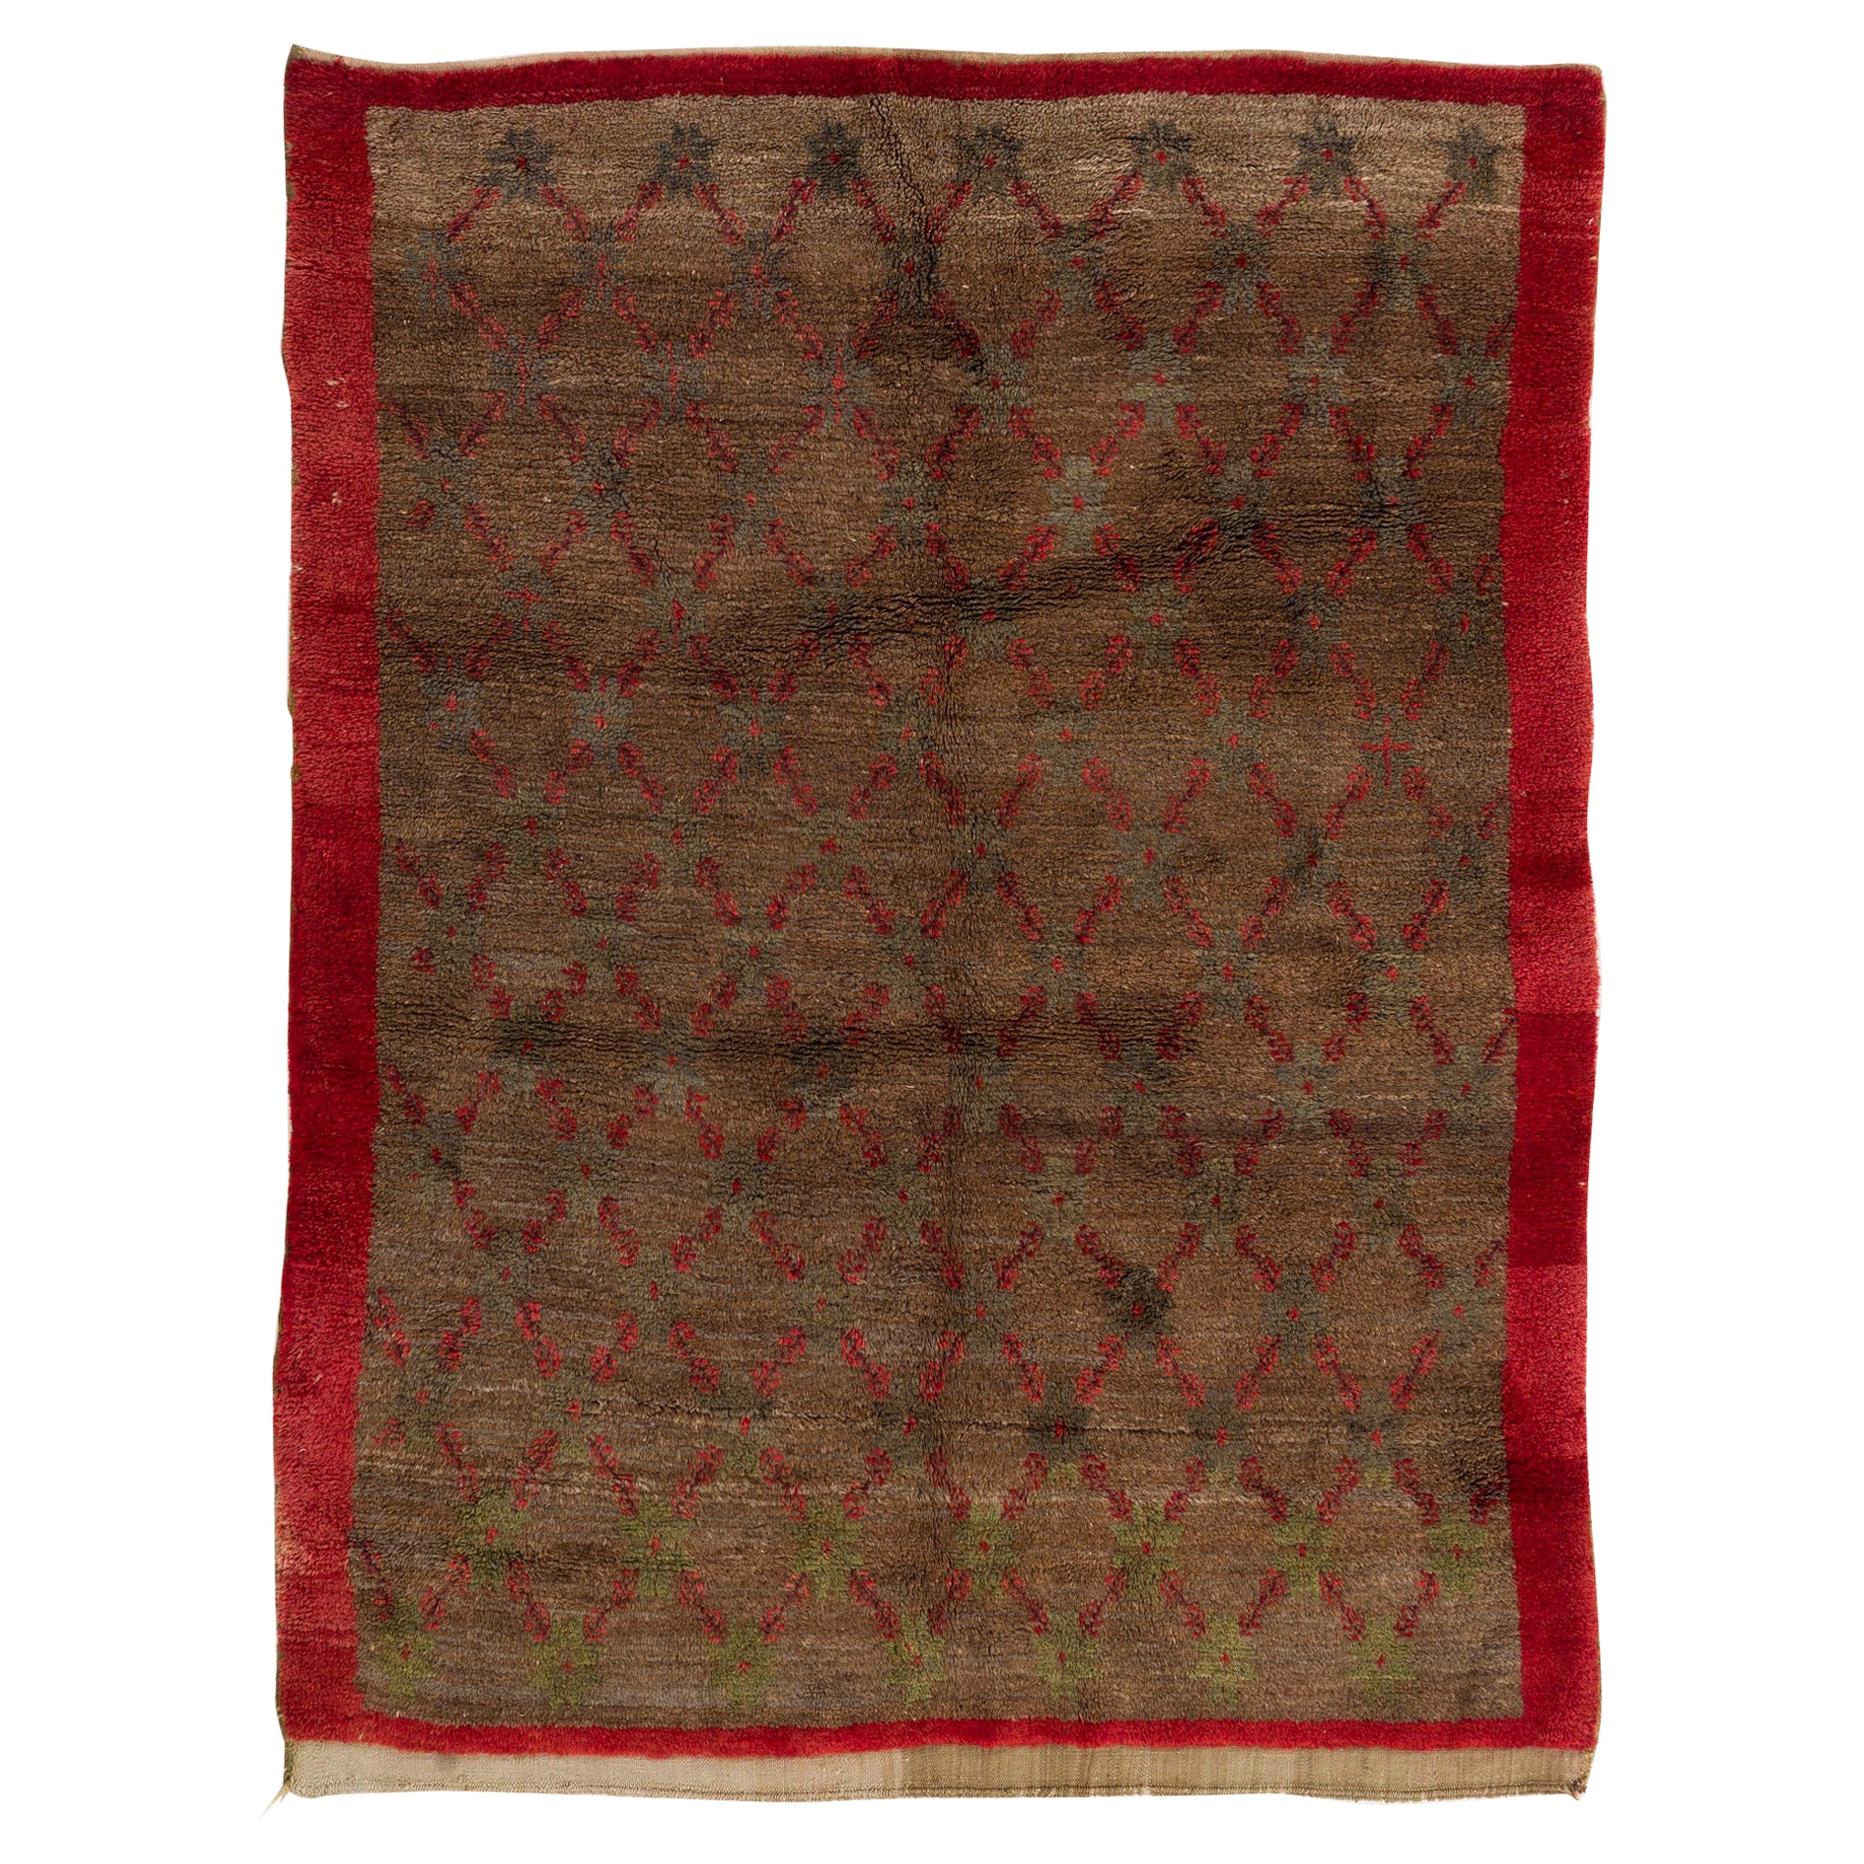 5.2x7 Ft Handgefertigter Tulu-Wollteppich mit floralem Gittermuster in Kamel- und Rottönen